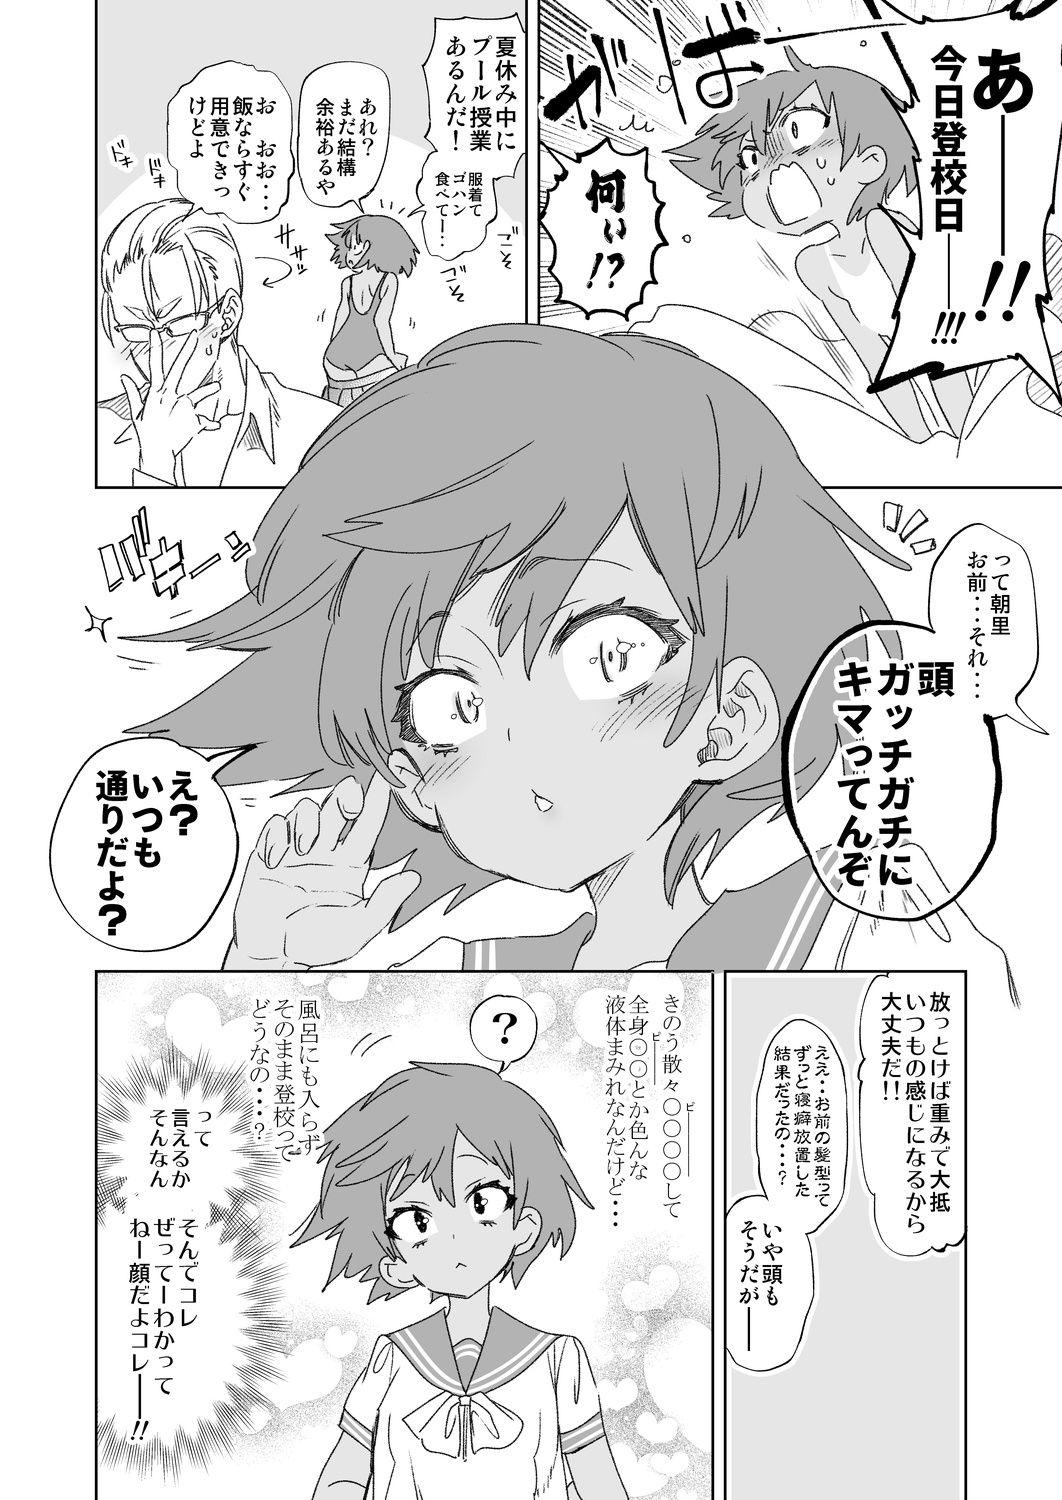 Rubia 2haku 3ka no Hanayome day 2 - Original Gayemo - Page 6